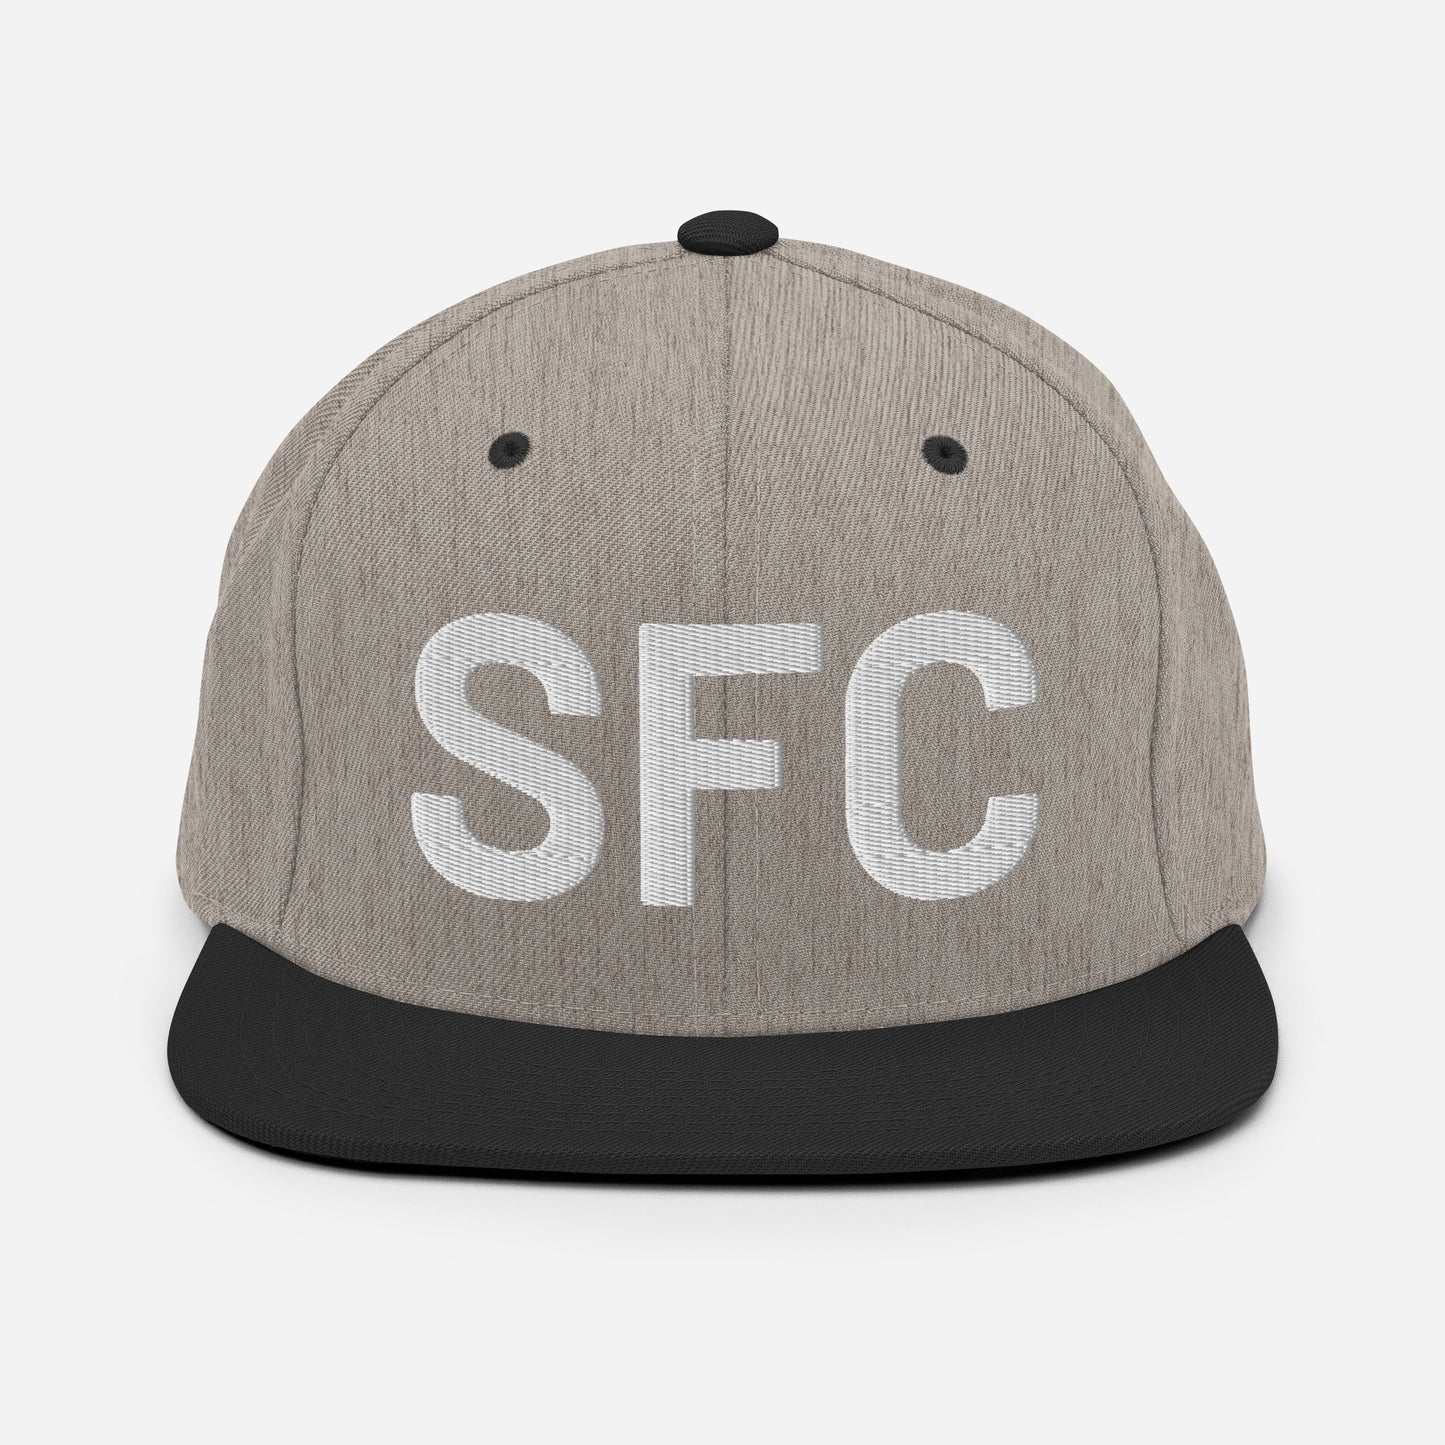 SFC Classic Flat Brim Hat